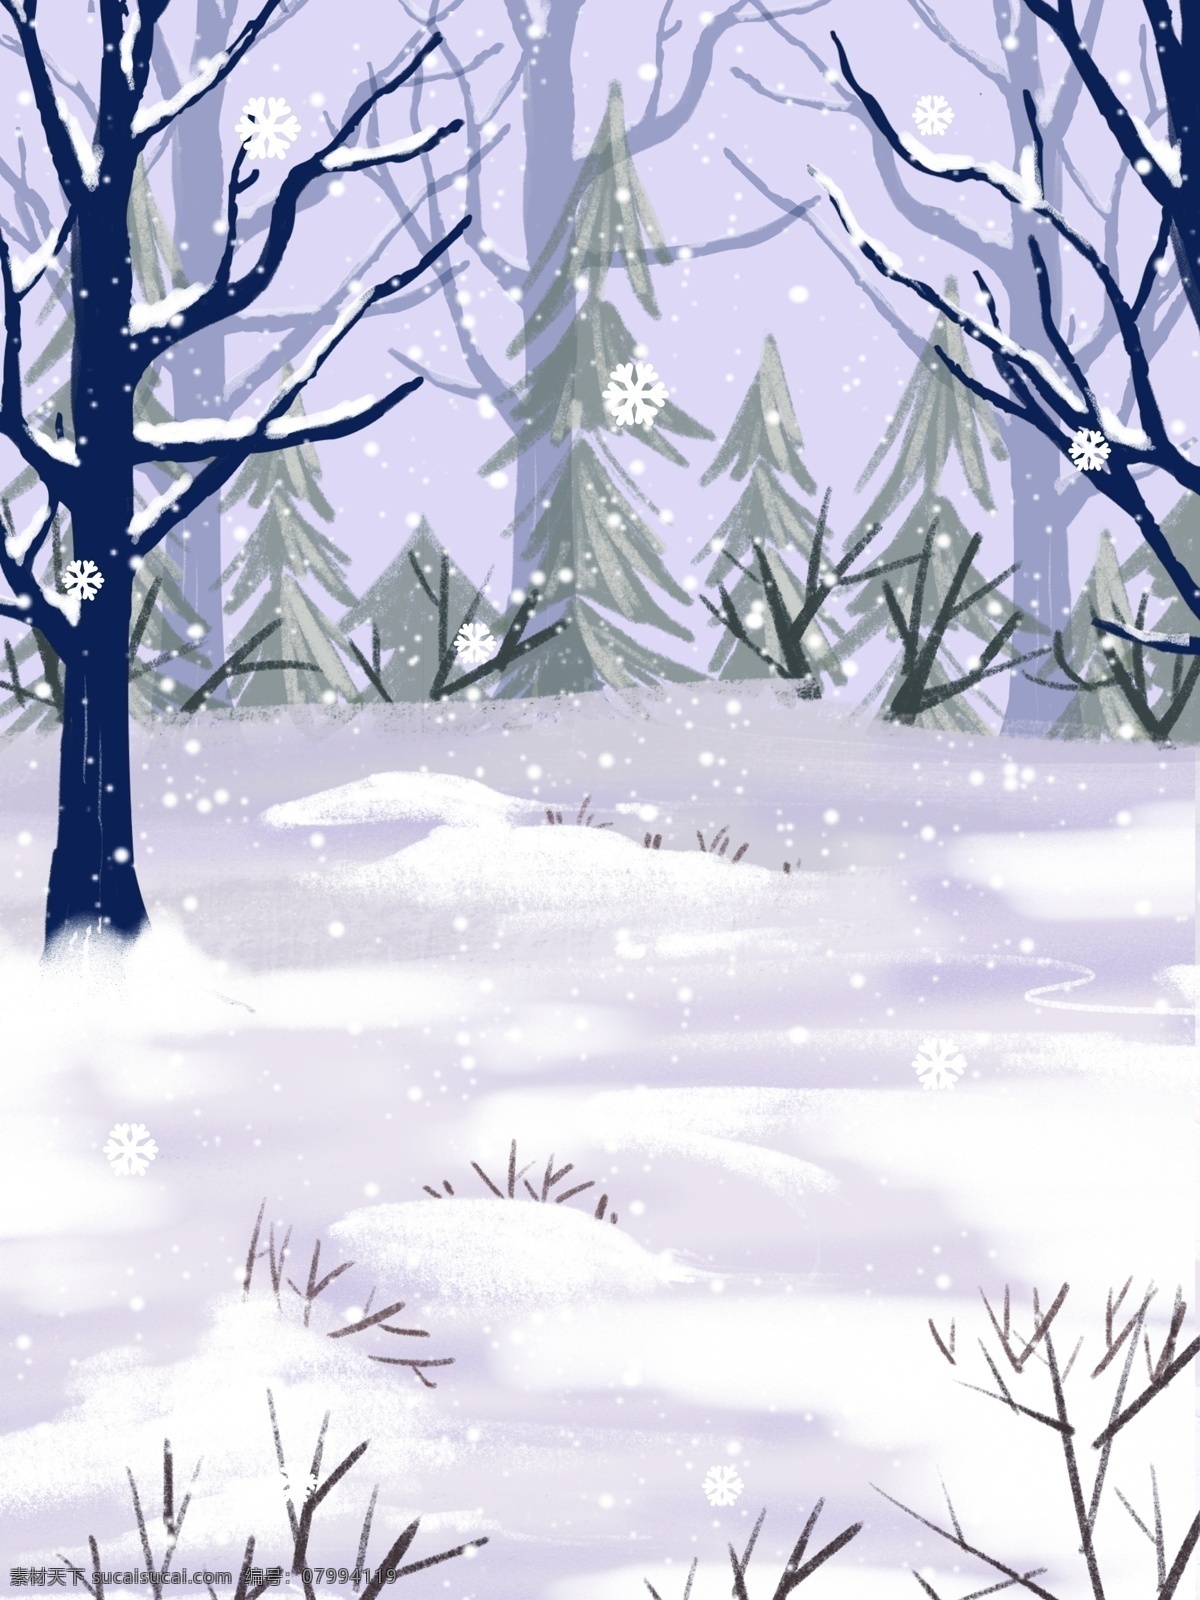 小雪 节气 郊外 风景 背景 冬天 唯美 雪地 雪景 树木 背景设计 彩绘背景 大寒背景